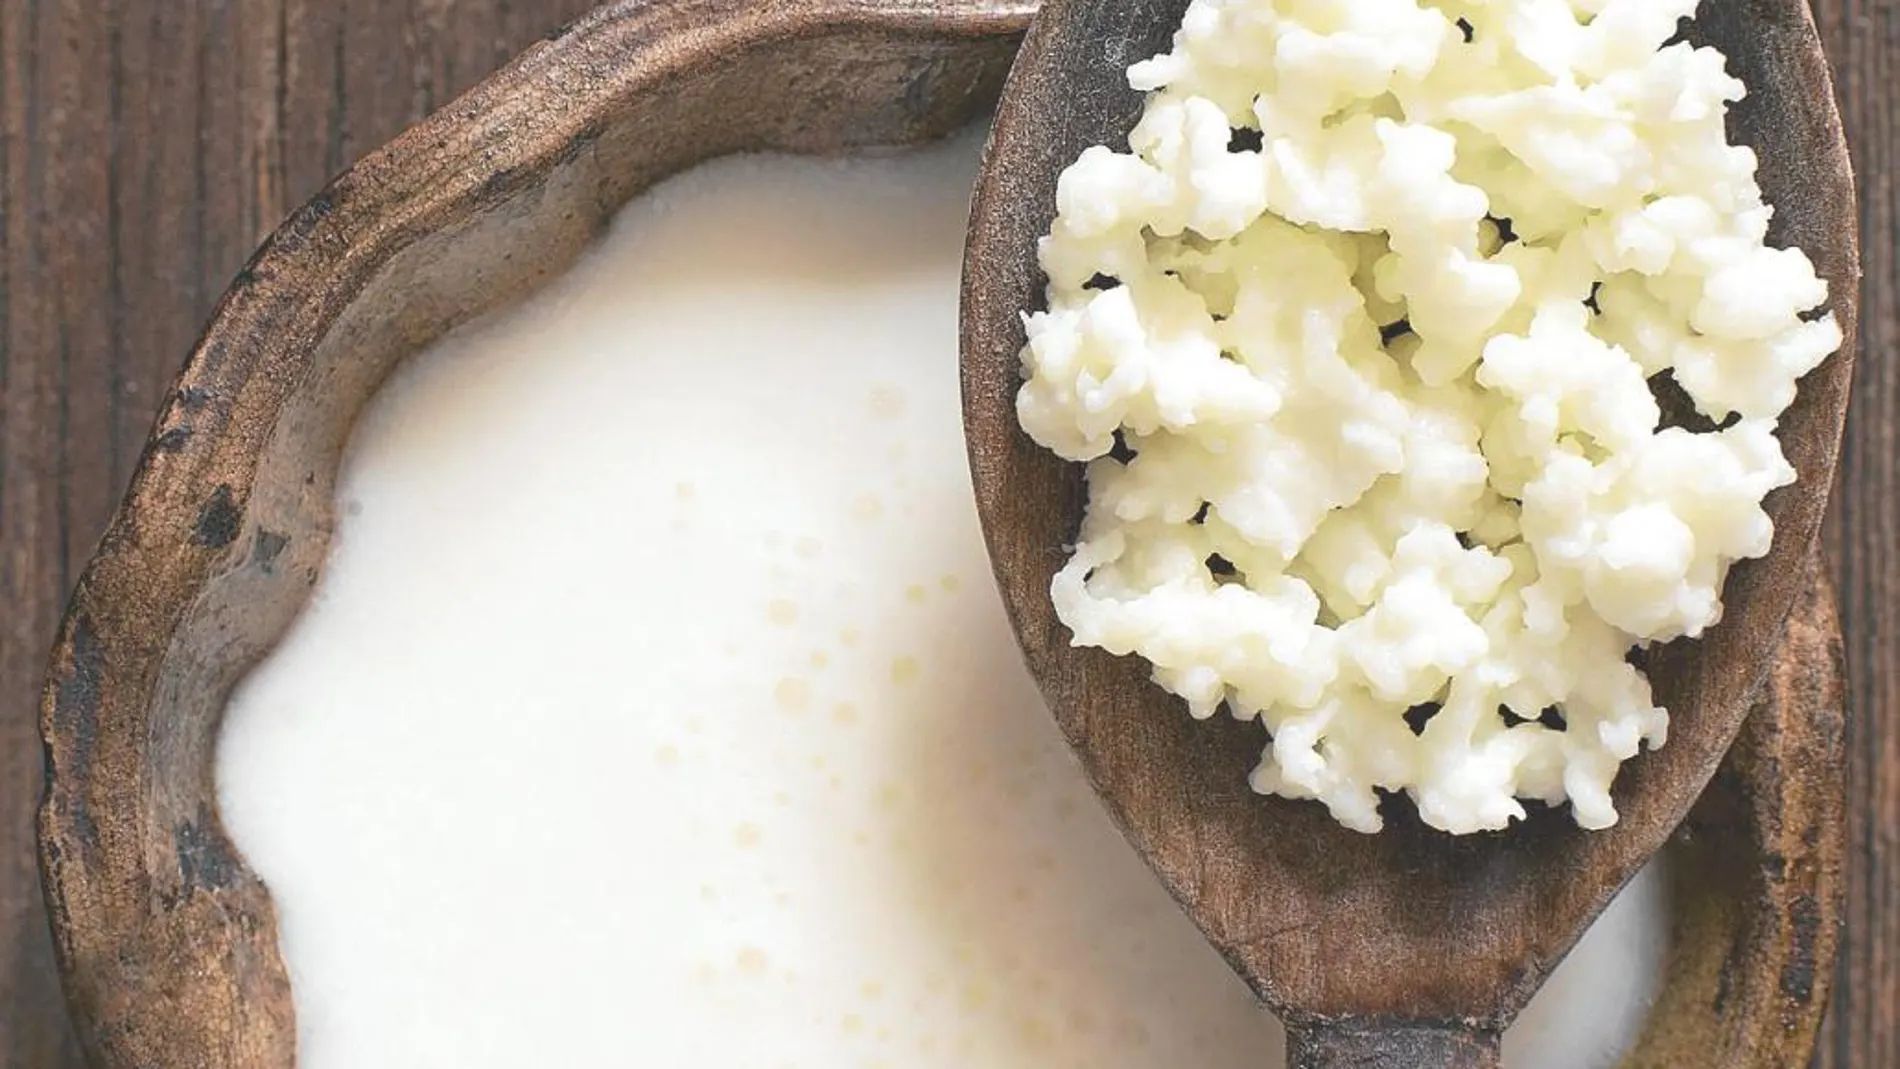 El kéfir es un producto fermentado probiótico con una textura similar al yogur líquido